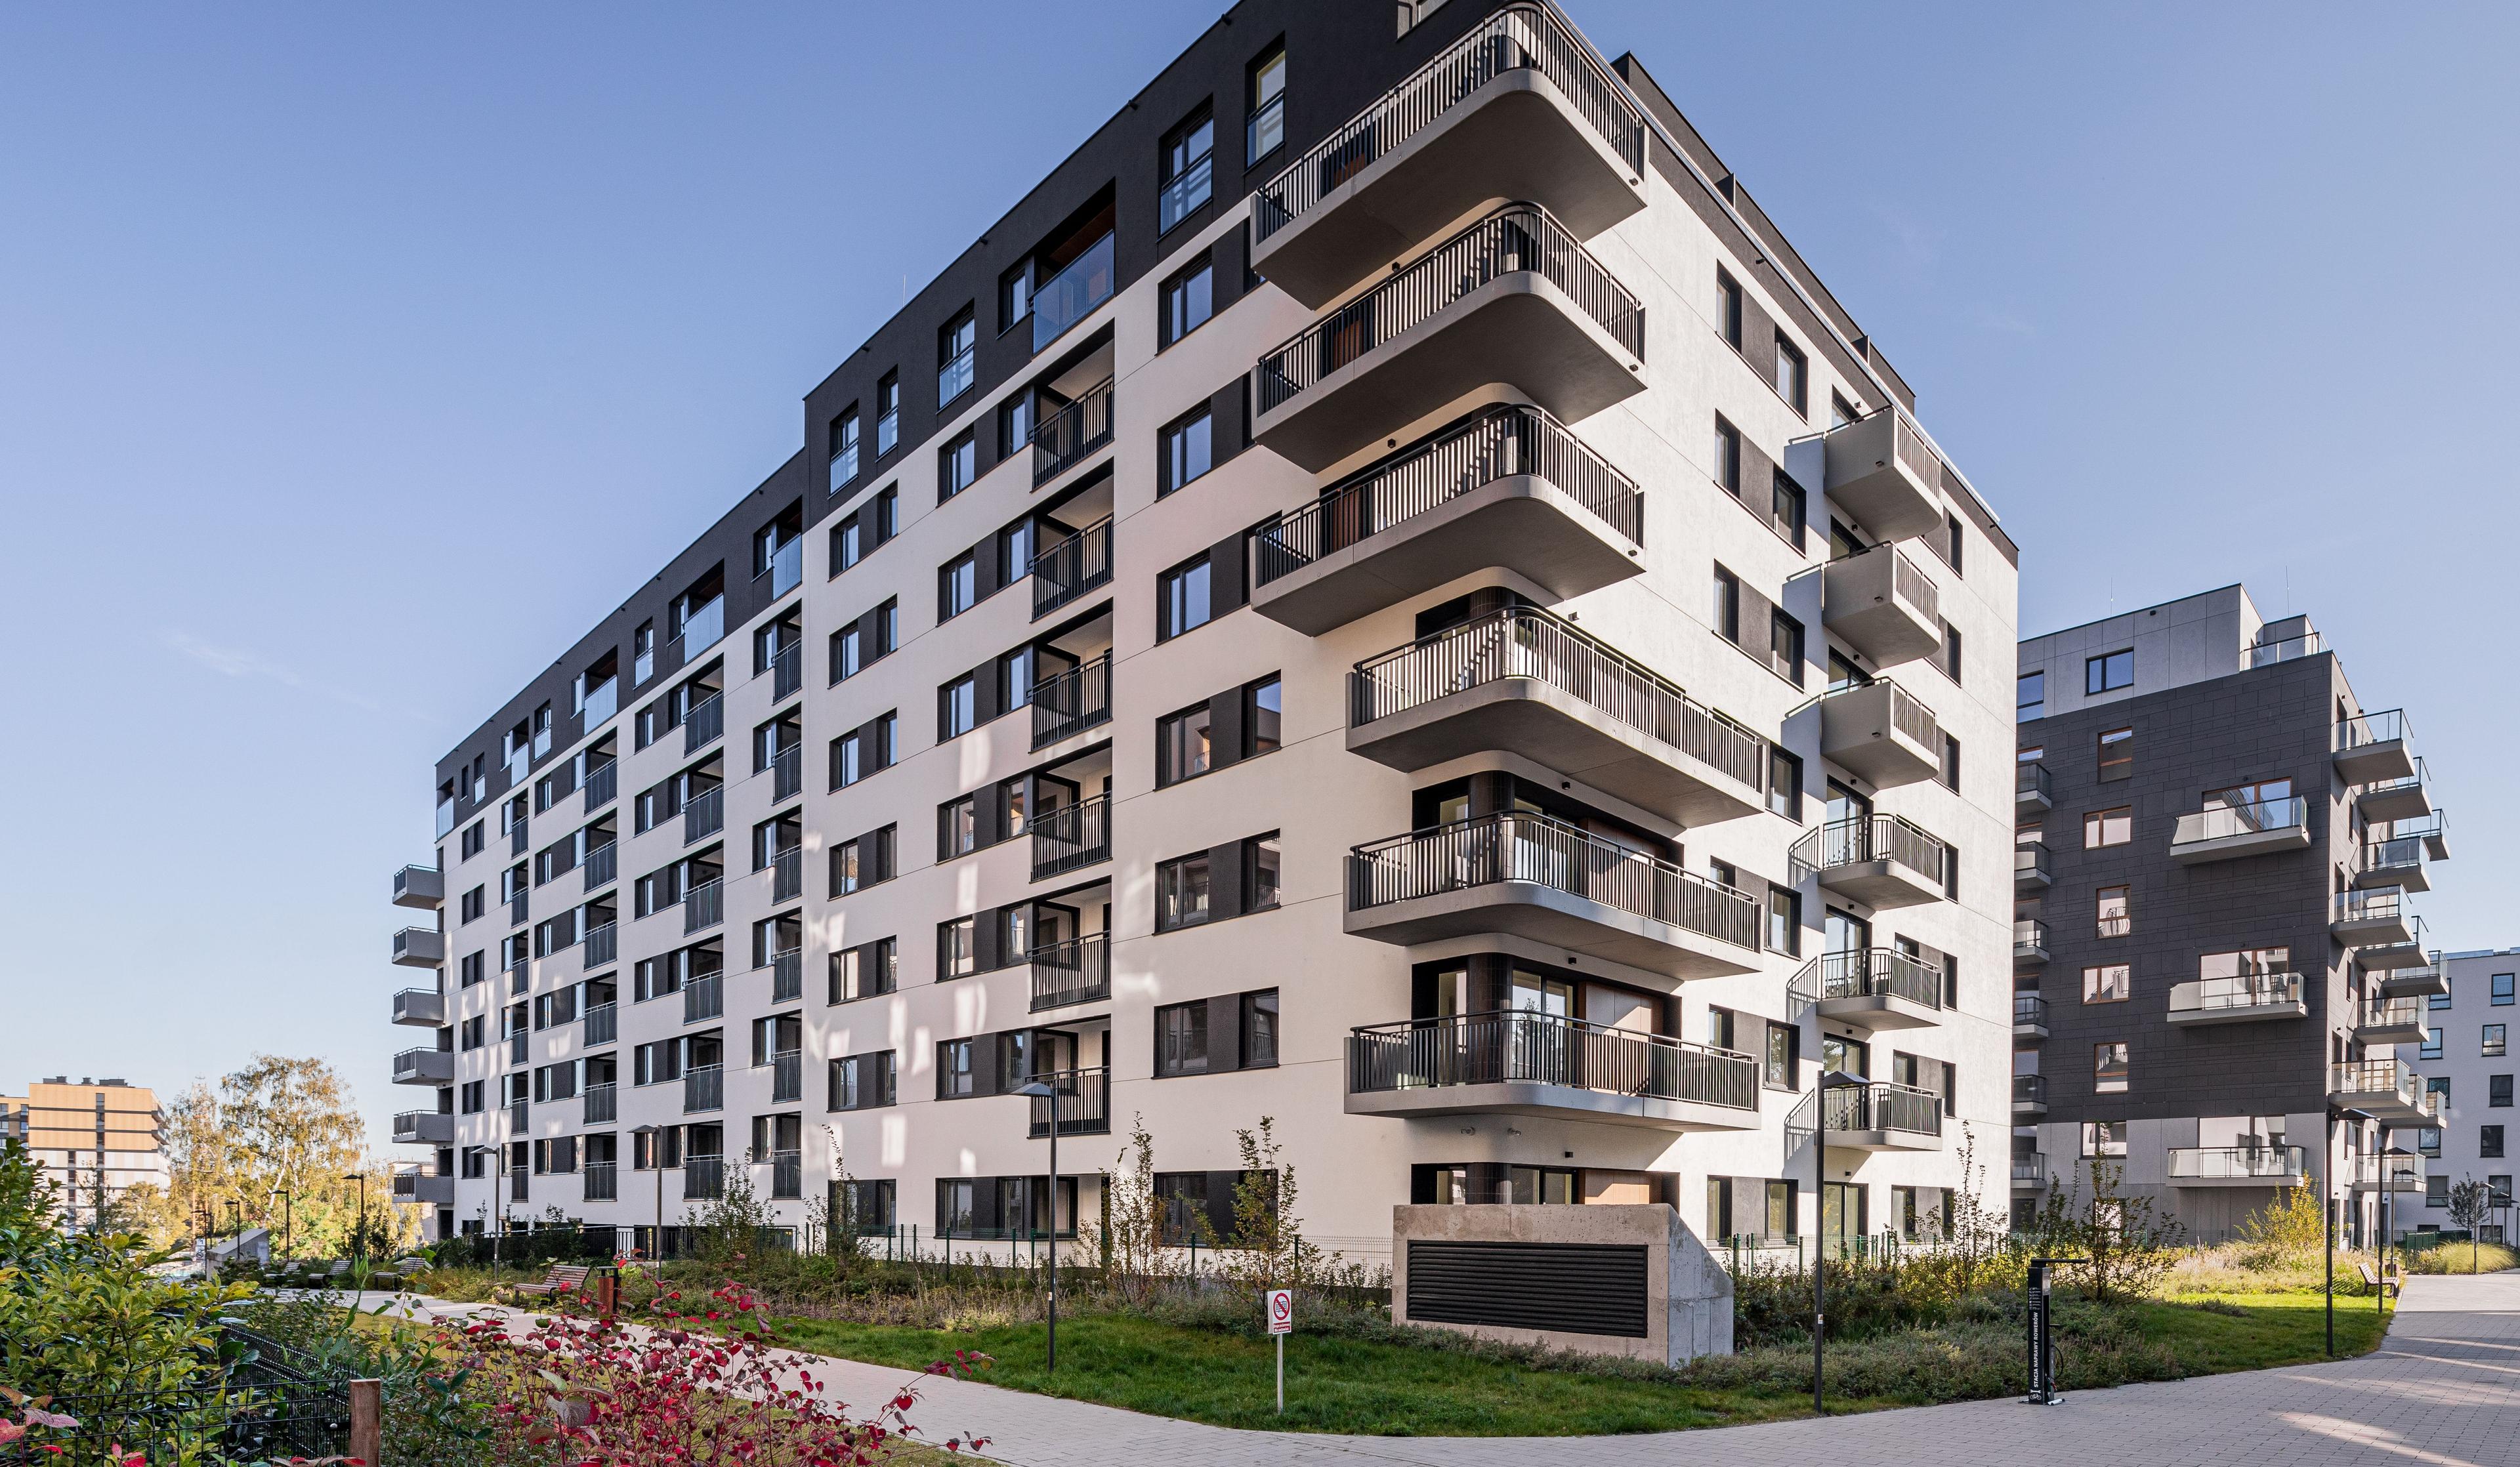 Atrakcyjne mieszkania w dwóch poznańskich lokalizacjach – sprawdź ofertę ROBYG!